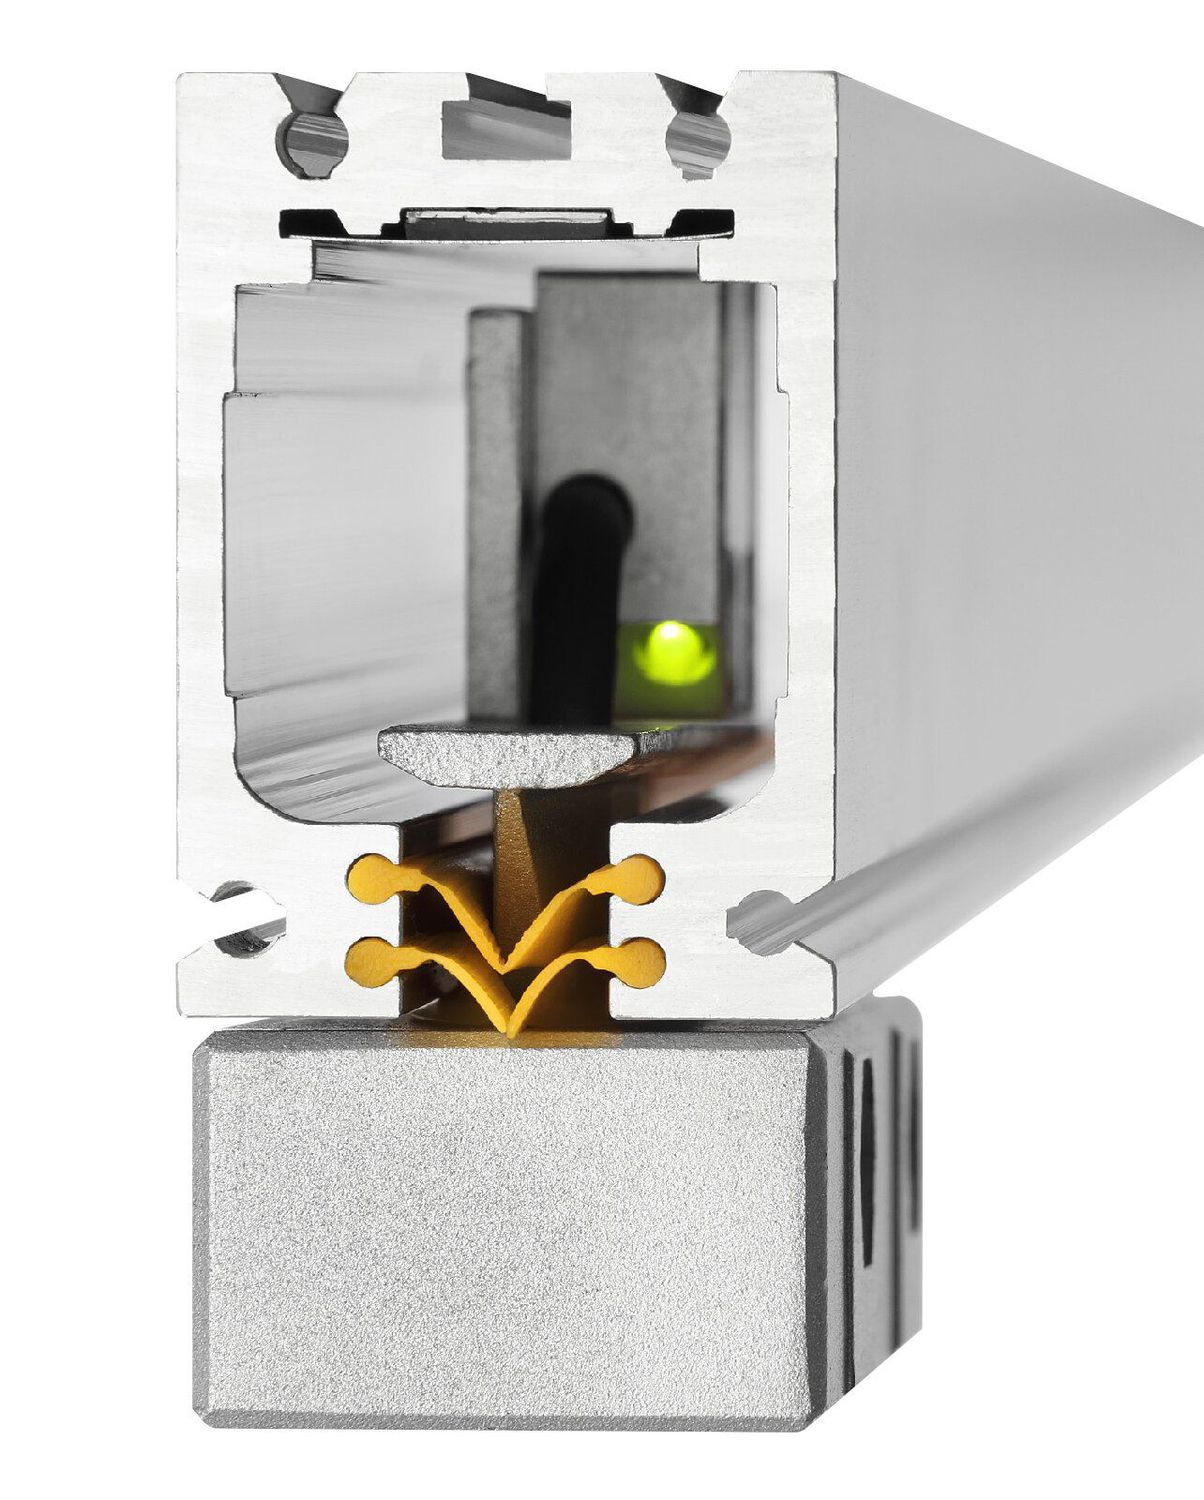 K+C Magnetmaßstab MSX 1500 mm - 5 µm | Verfahrweg 1510 mm